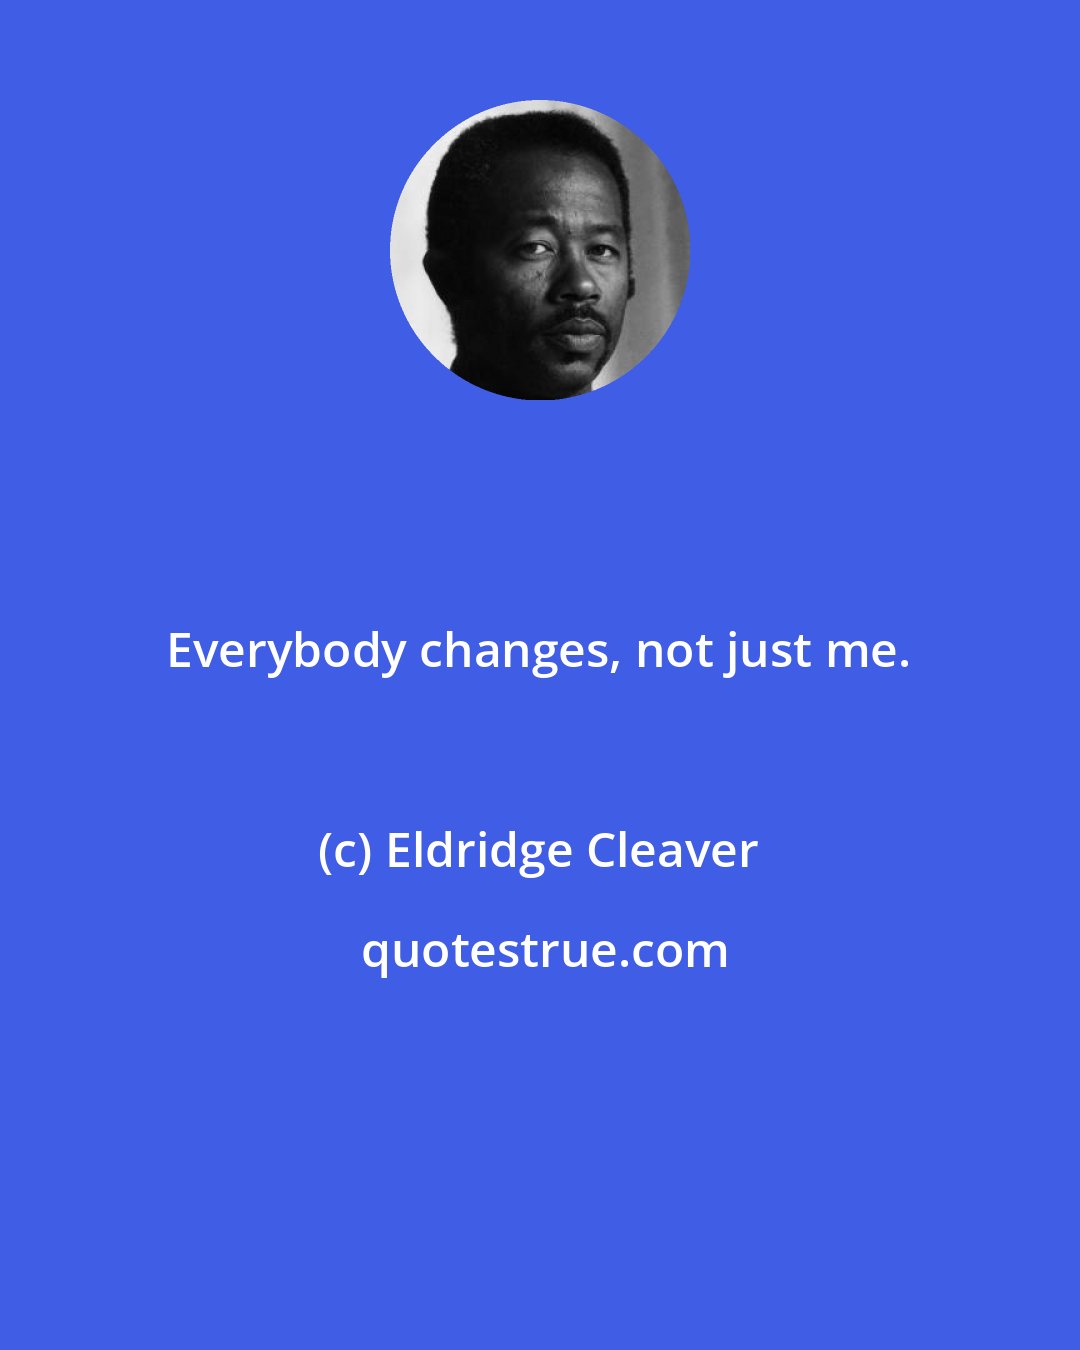 Eldridge Cleaver: Everybody changes, not just me.